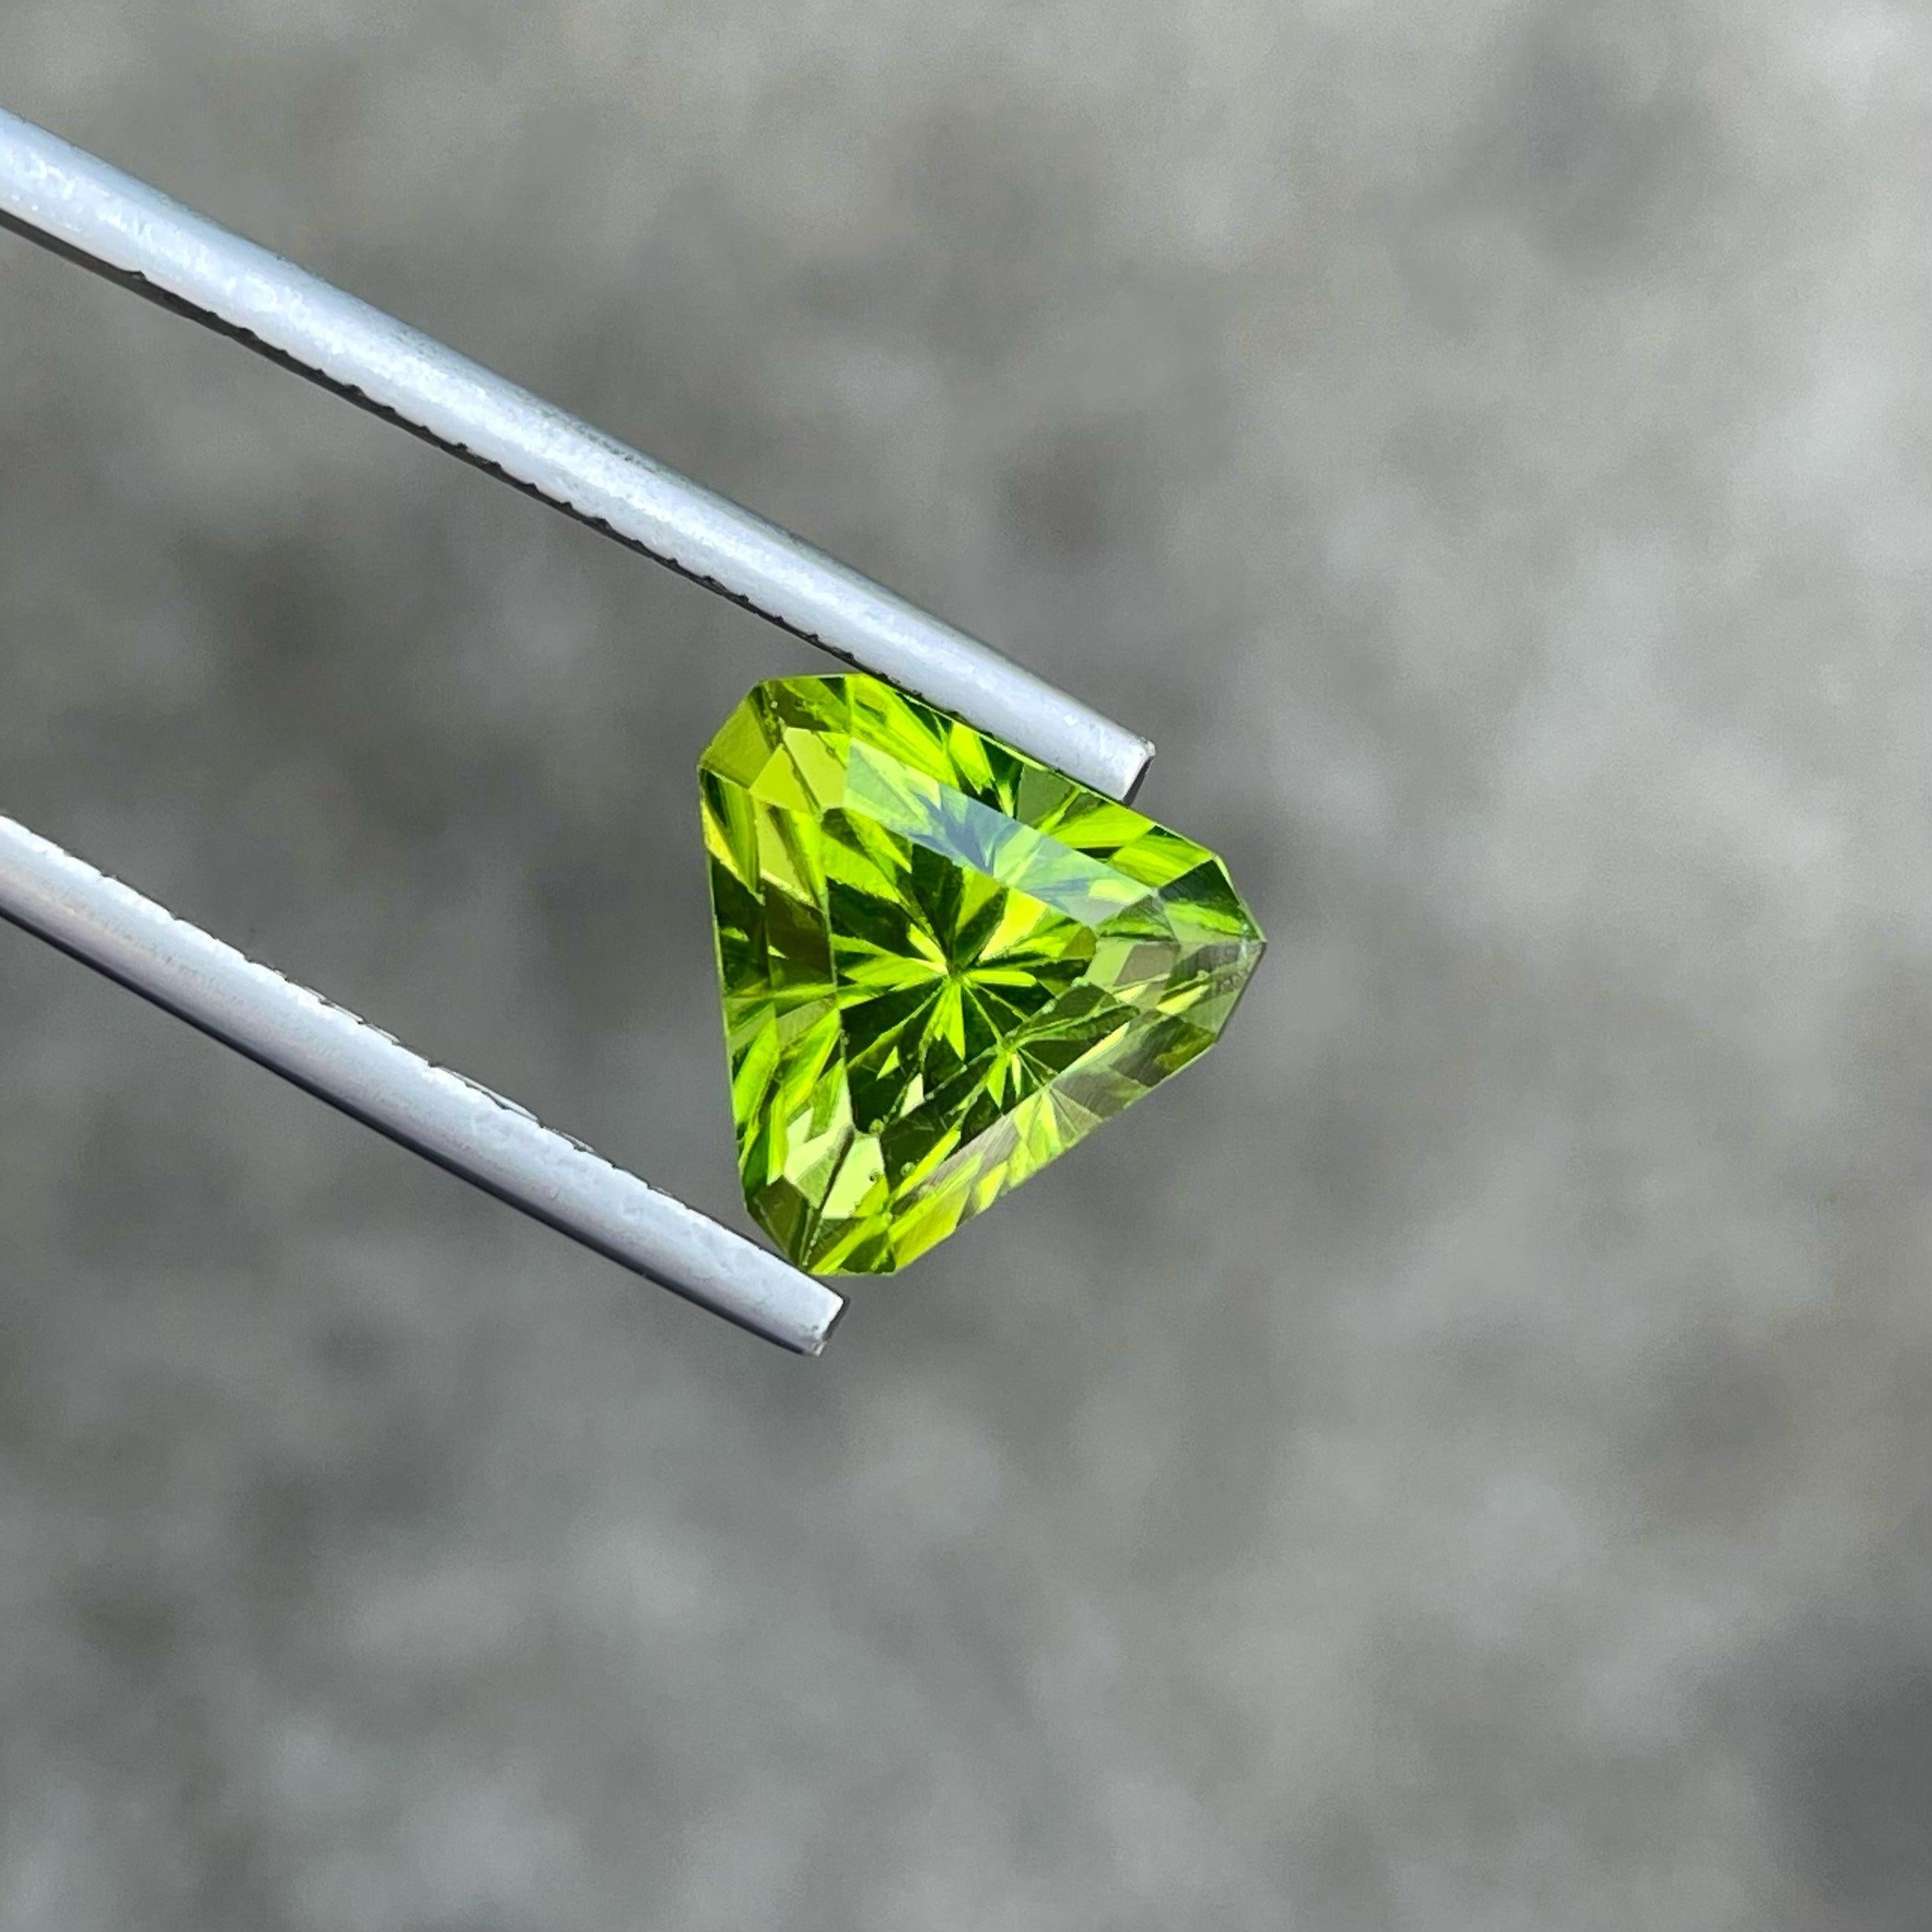 Fantastique péridot naturel taillé en brillant de 4,75 carats en provenance du Pakistan.  Forme triangulaire, couleur verte incroyable. Une grande brillance. Cette pierre précieuse est de pureté SI.

Informations sur le produit :
TYPE DE GEMSTONE